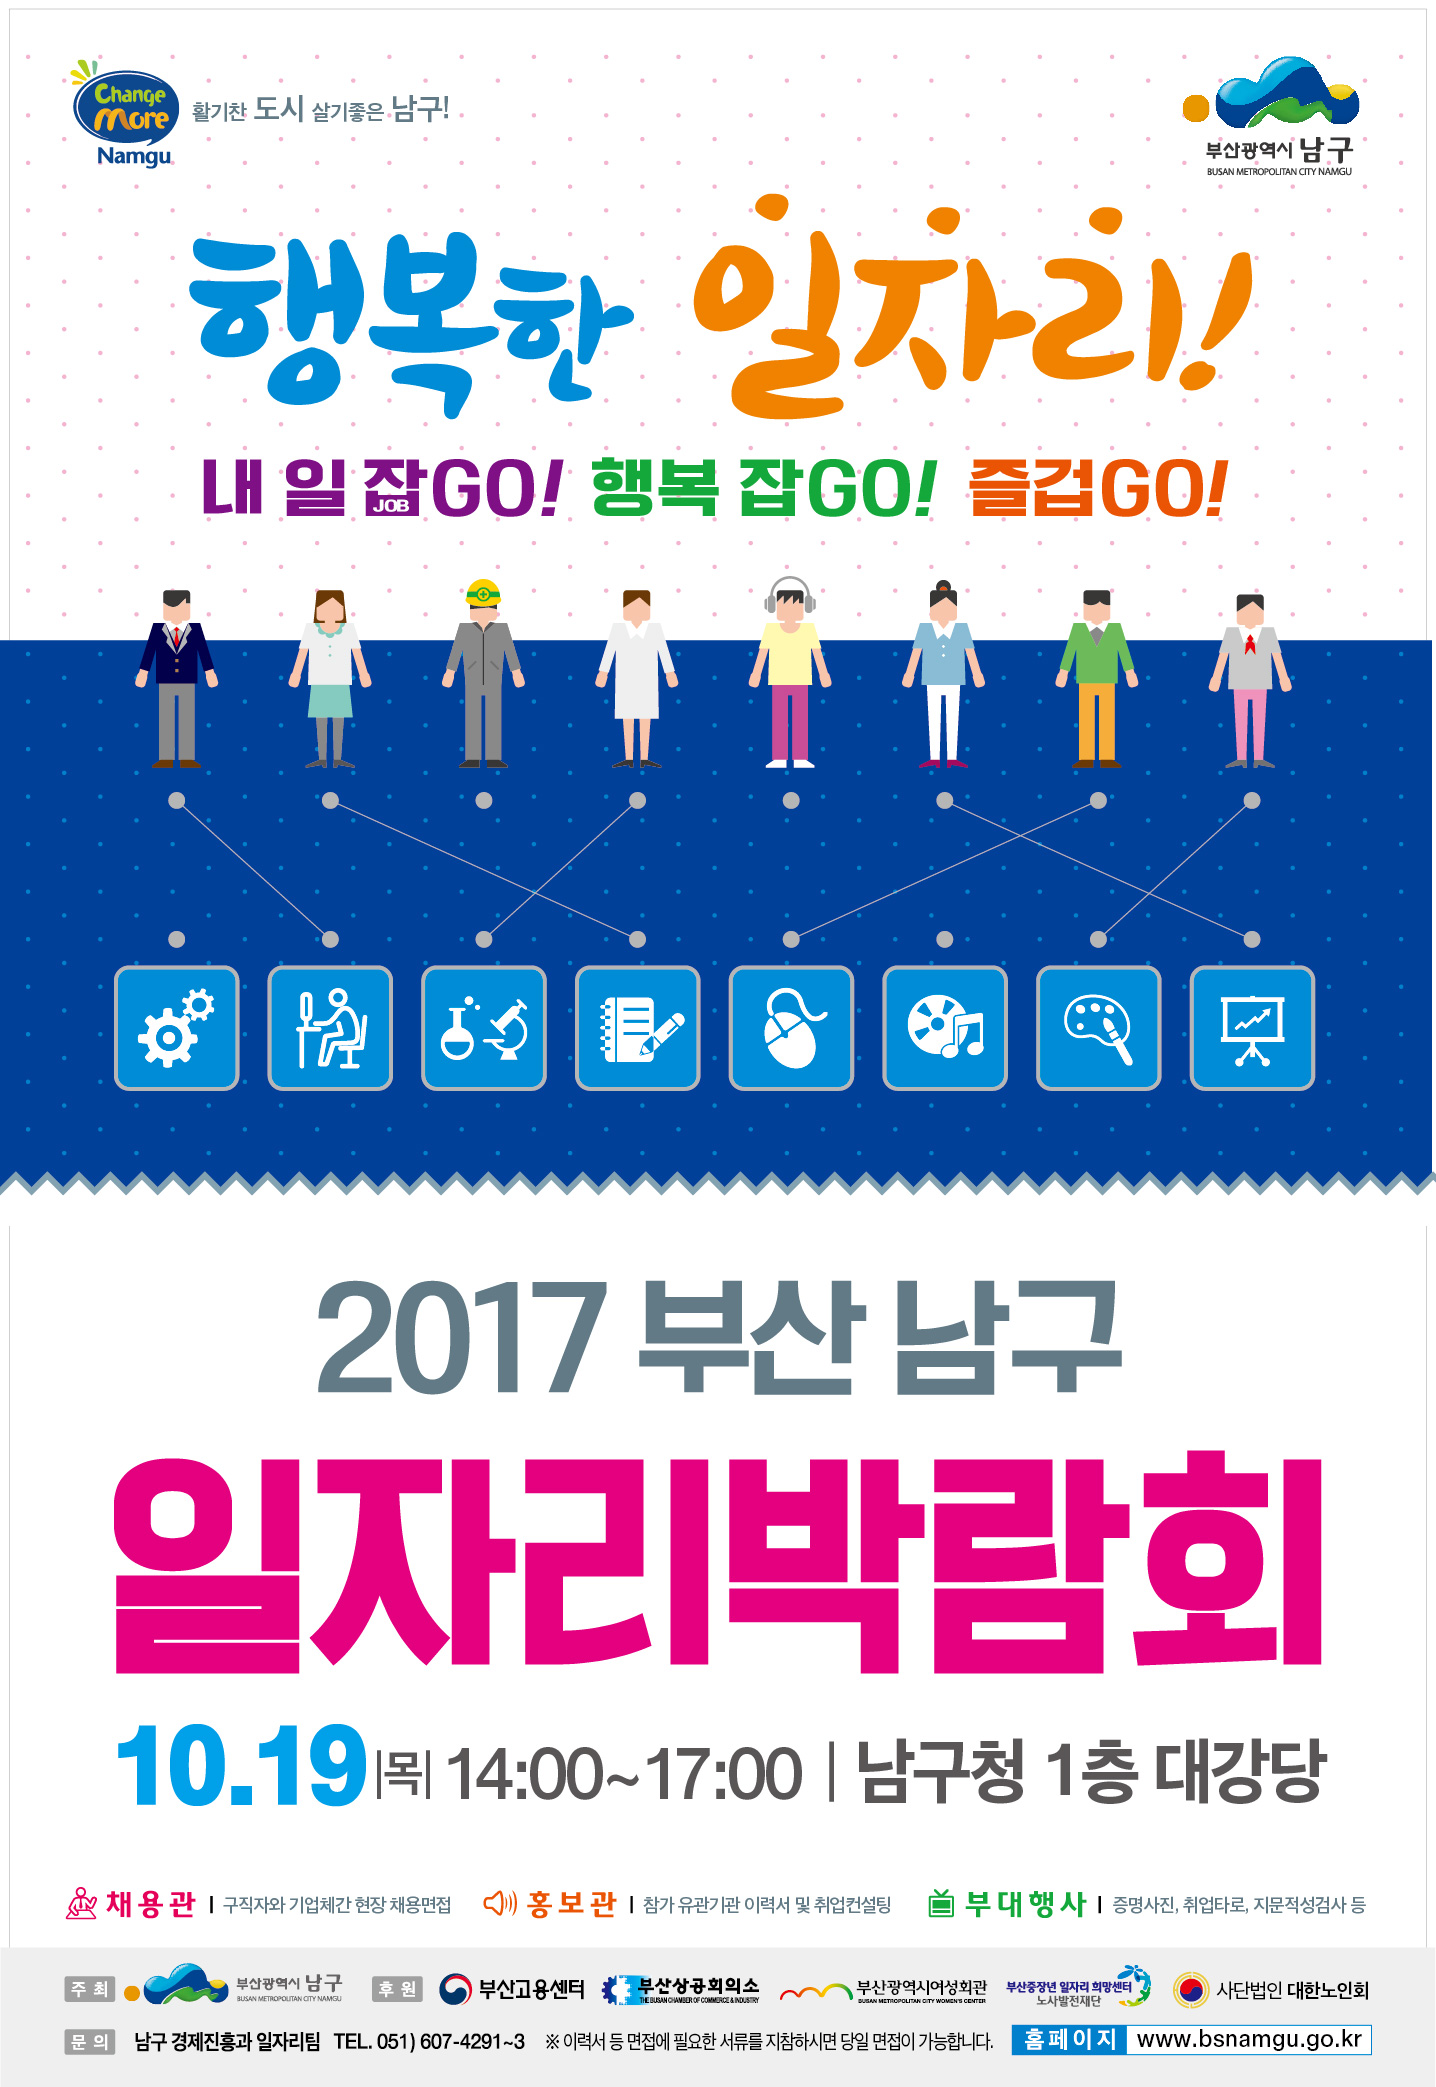 2017년 남구 일자리 박람회 개최 안내